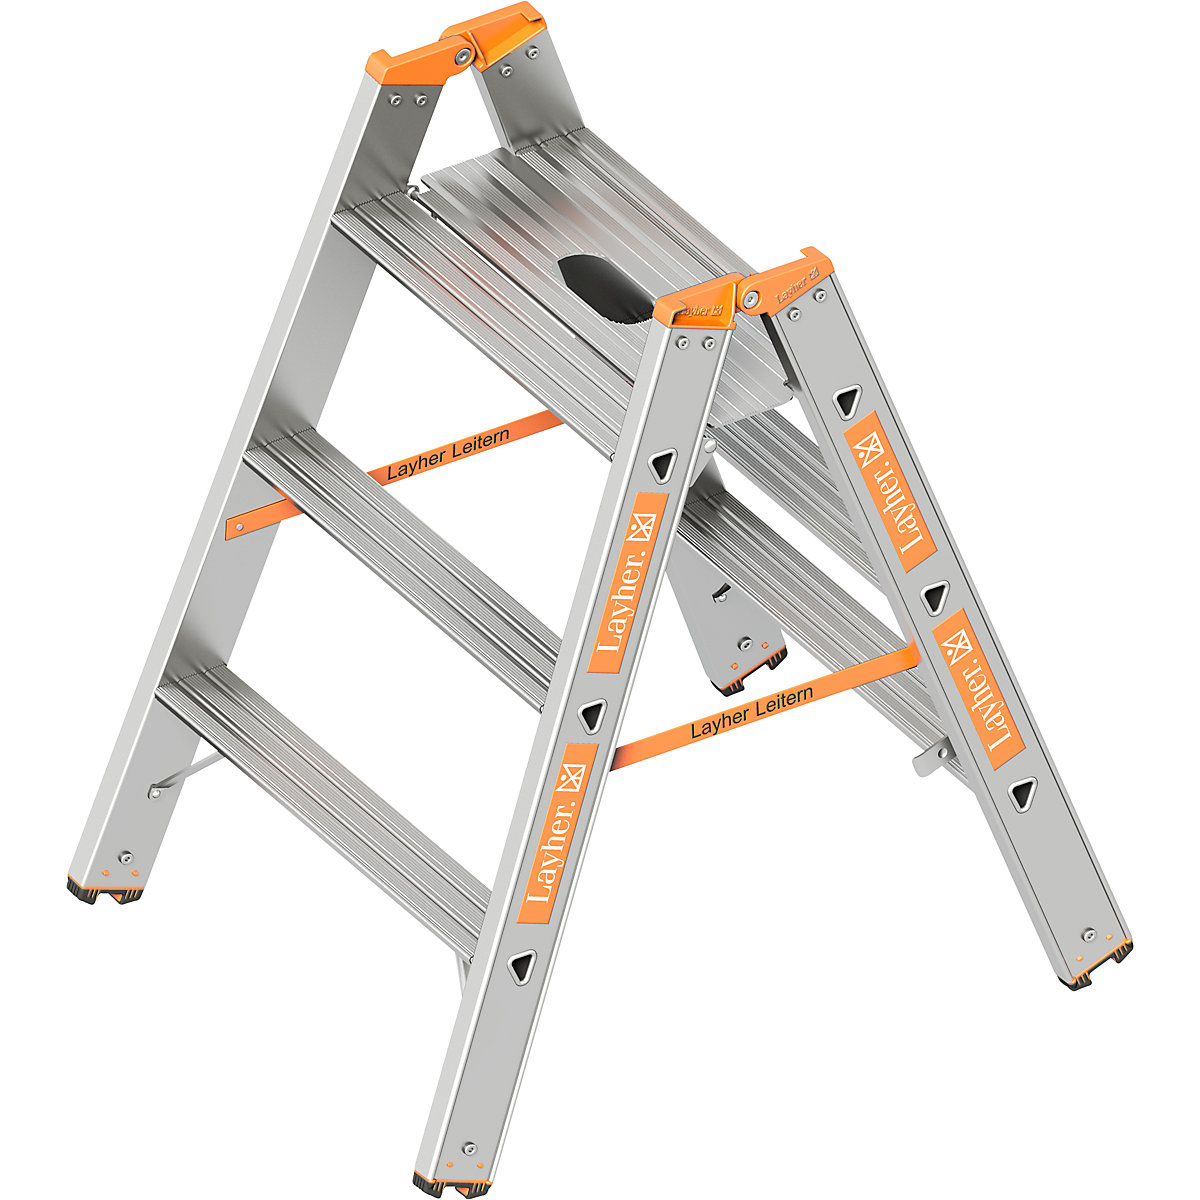 Prostostoječa lestev za težke obremenitve – Layher, nosilnost 200 kg, 2 x 3 stopnice-1